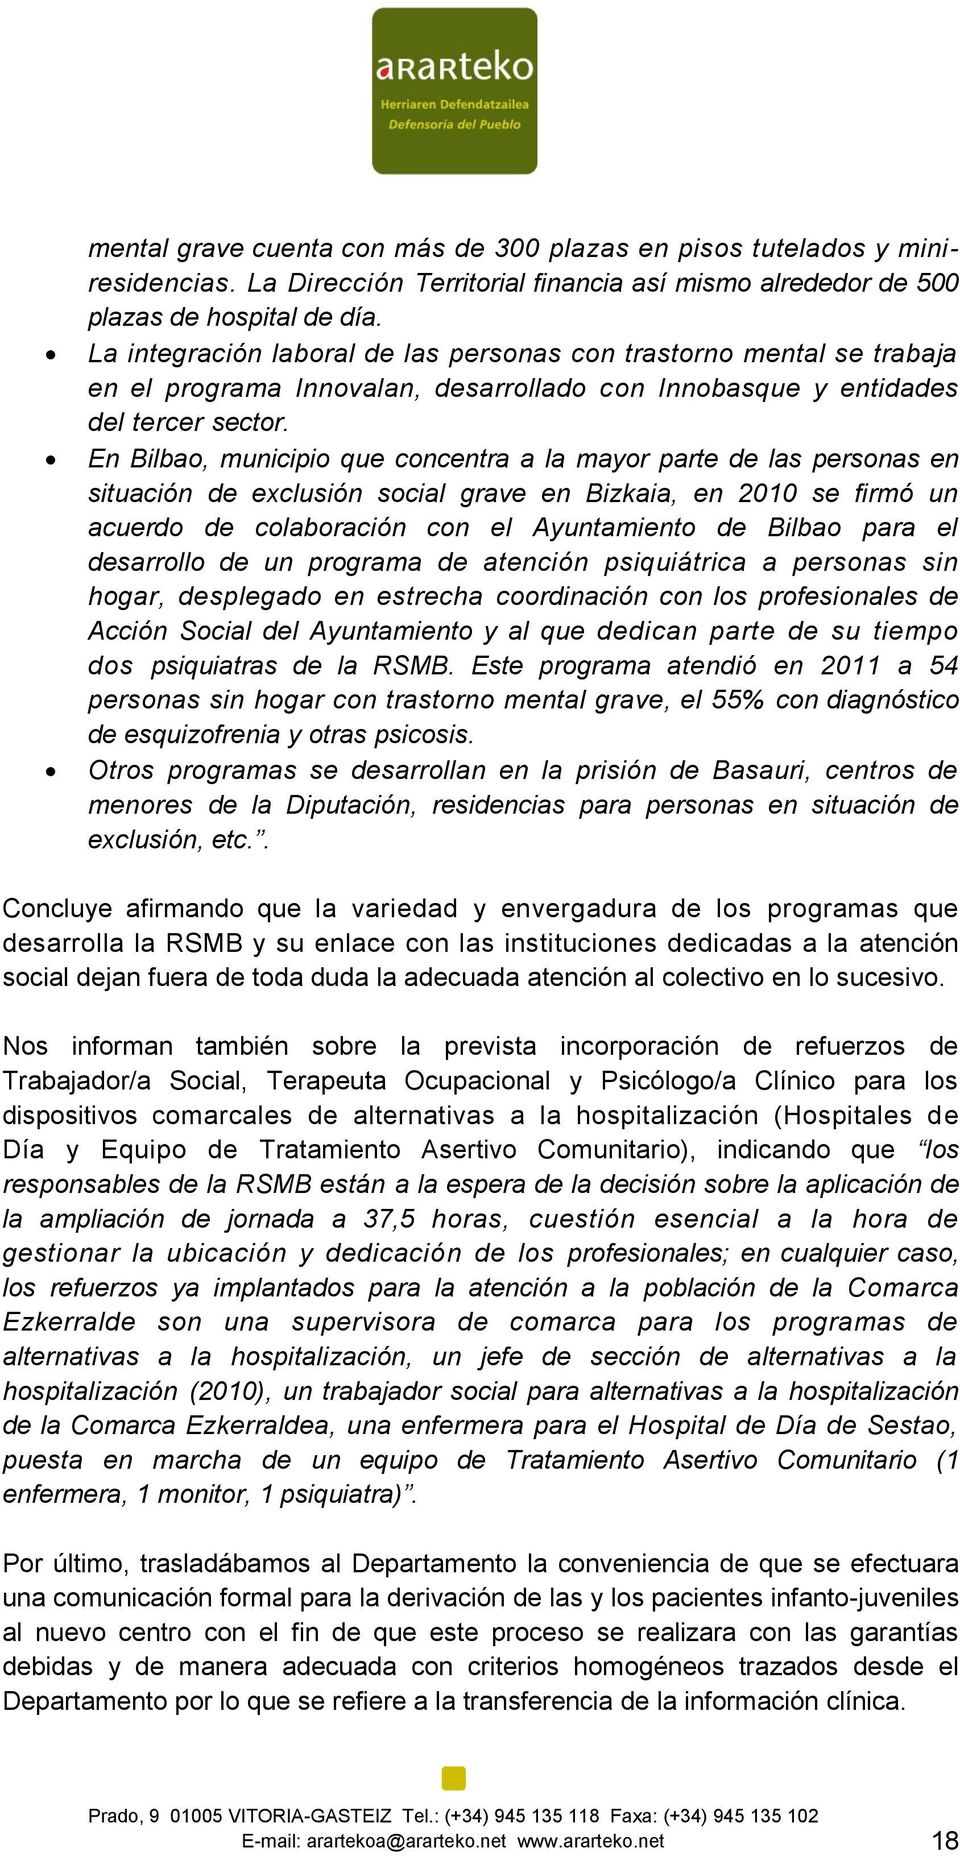 En Bilbao, municipio que concentra a la mayor parte de las personas en situación de exclusión social grave en Bizkaia, en 2010 se firmó un acuerdo de colaboración con el Ayuntamiento de Bilbao para